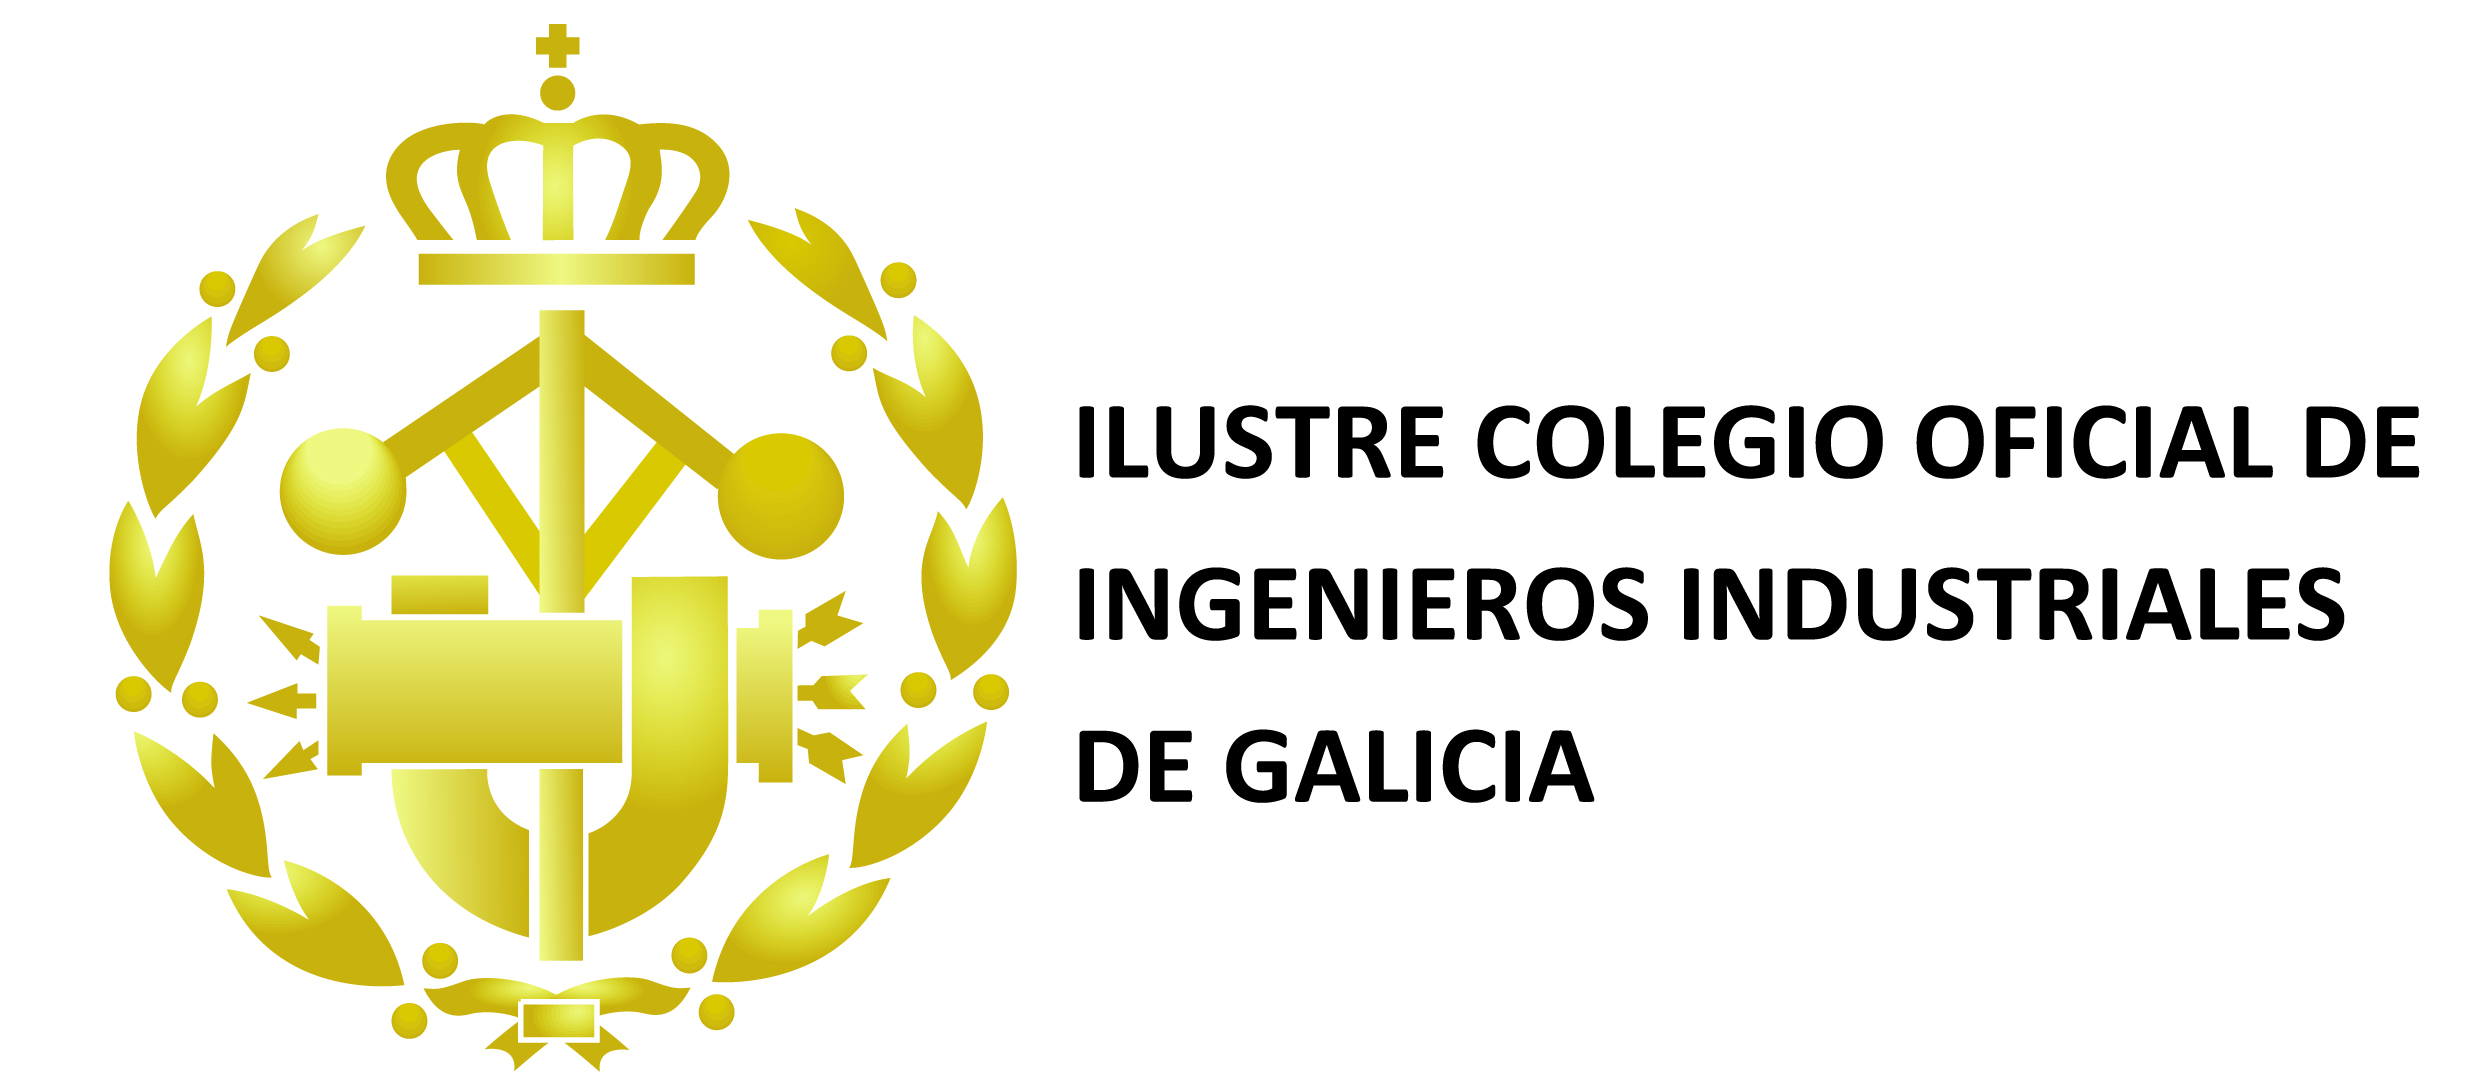 ICOIIG Delegacion de Vigo - Curso Lider-Coach, Auto-LIderazgo & Forjar Alianzas & Inspirar Metas